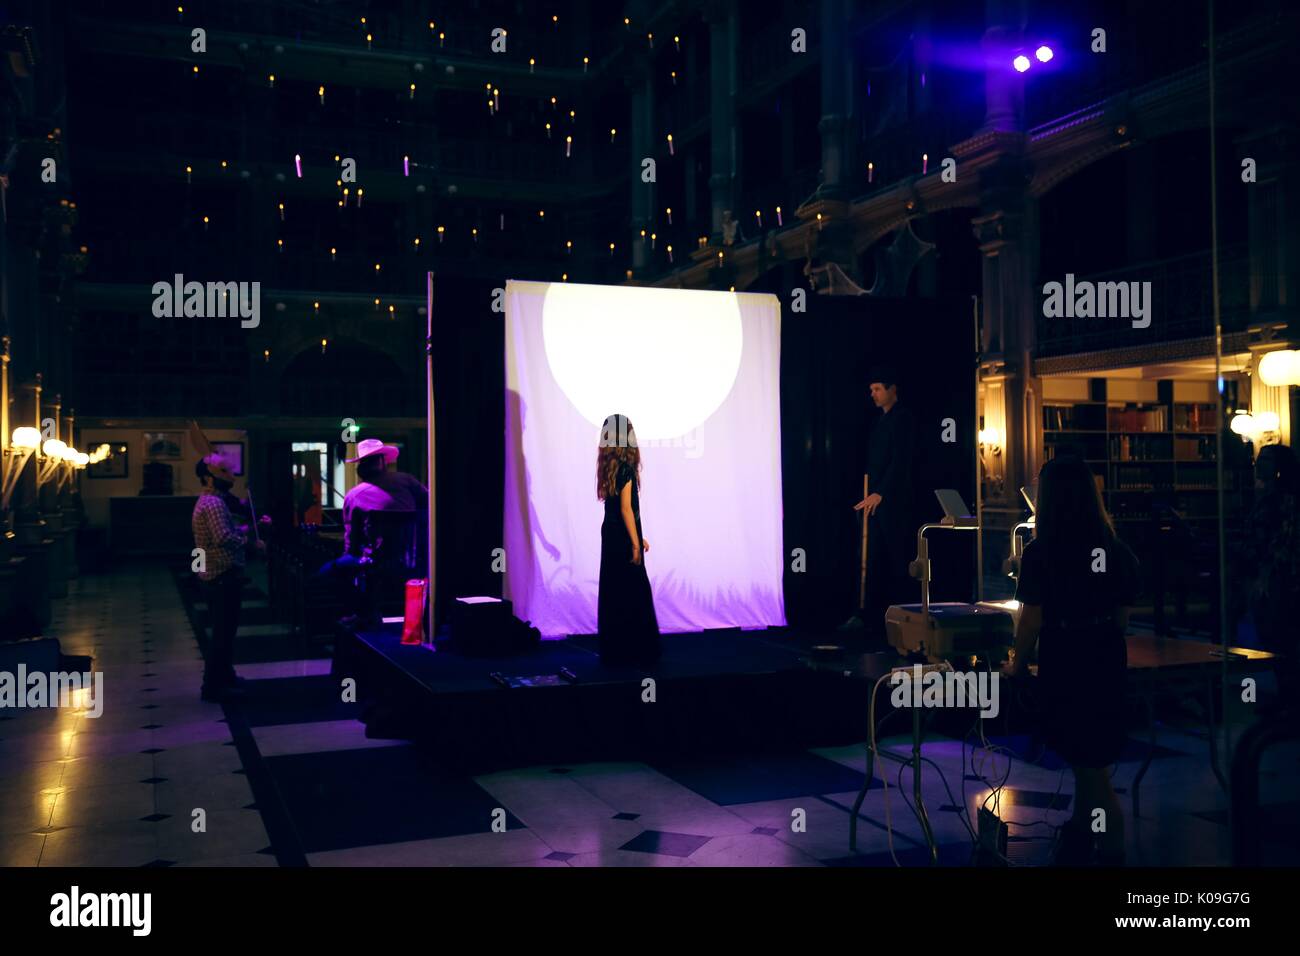 Ein Mädchen in einem langen dunklen Kleid und ein Mann in einem Hut mit einem Stock auf der Bühne, sondern hinter einem Vorhang, ihre Schatten auf den Vorhang für das Publikum zu sehen, projiziert, während ein Schatten Puppenspiel, 2015. Mit freundlicher Genehmigung von Eric Chen. Stockfoto